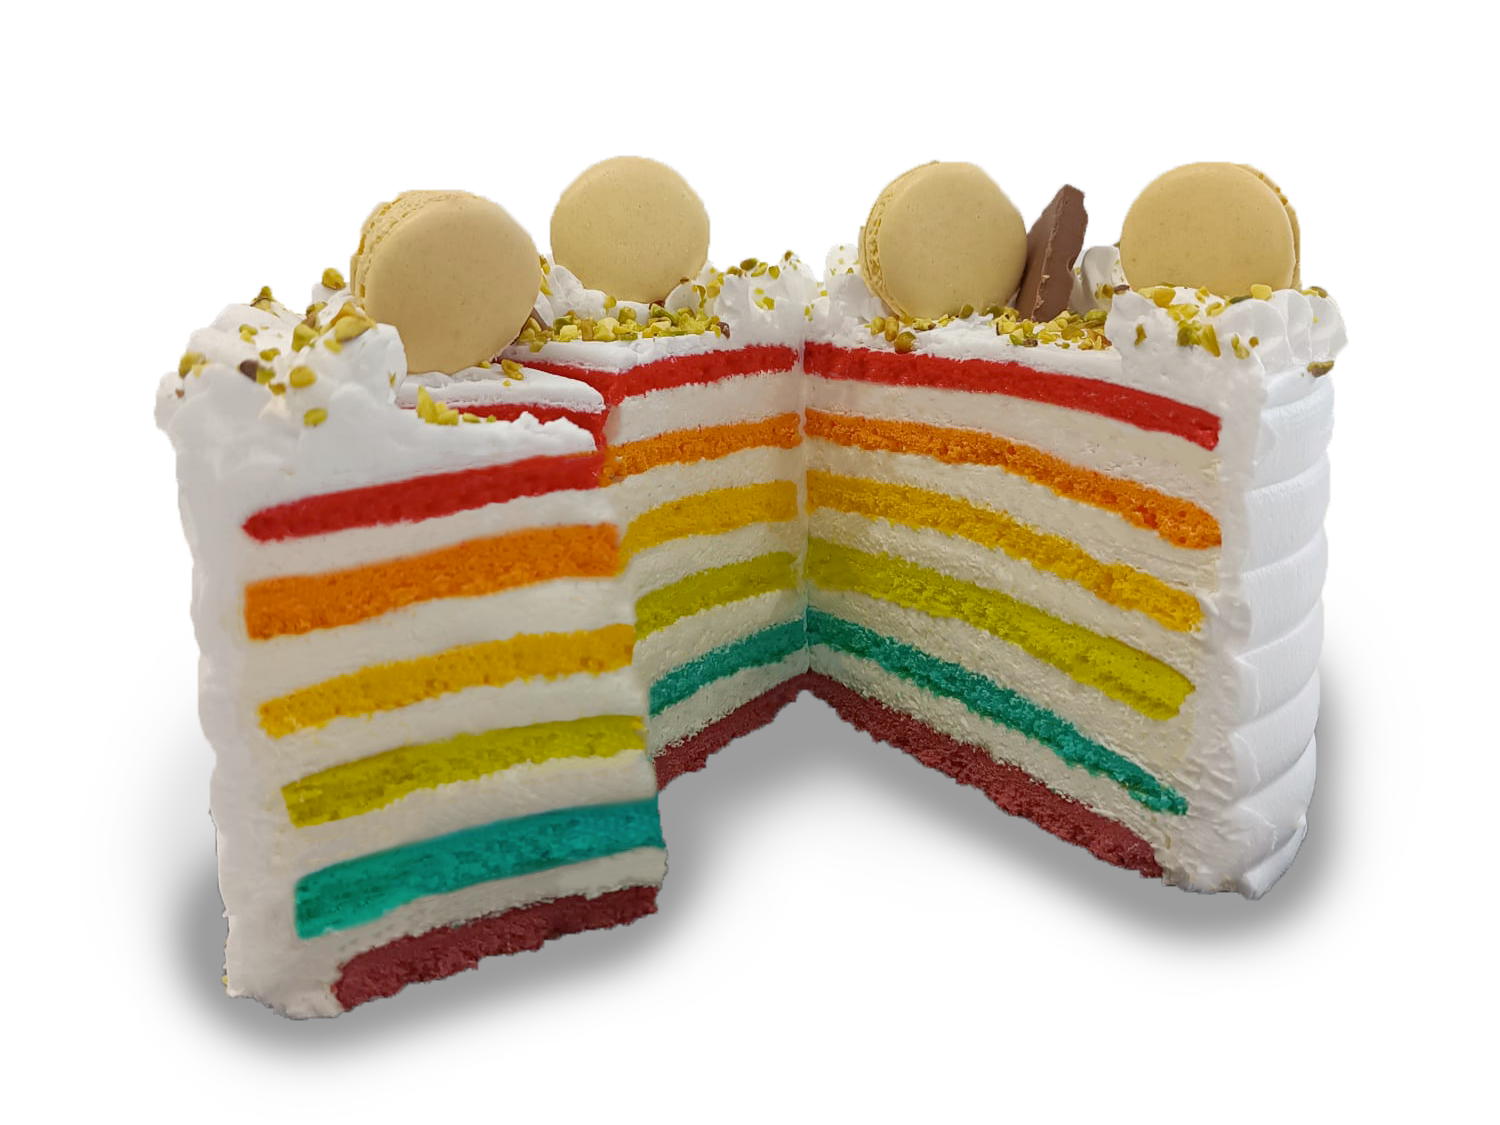 Rainbow cake con strati di biscuit colorati e farcitura bianca di mousse al limone.